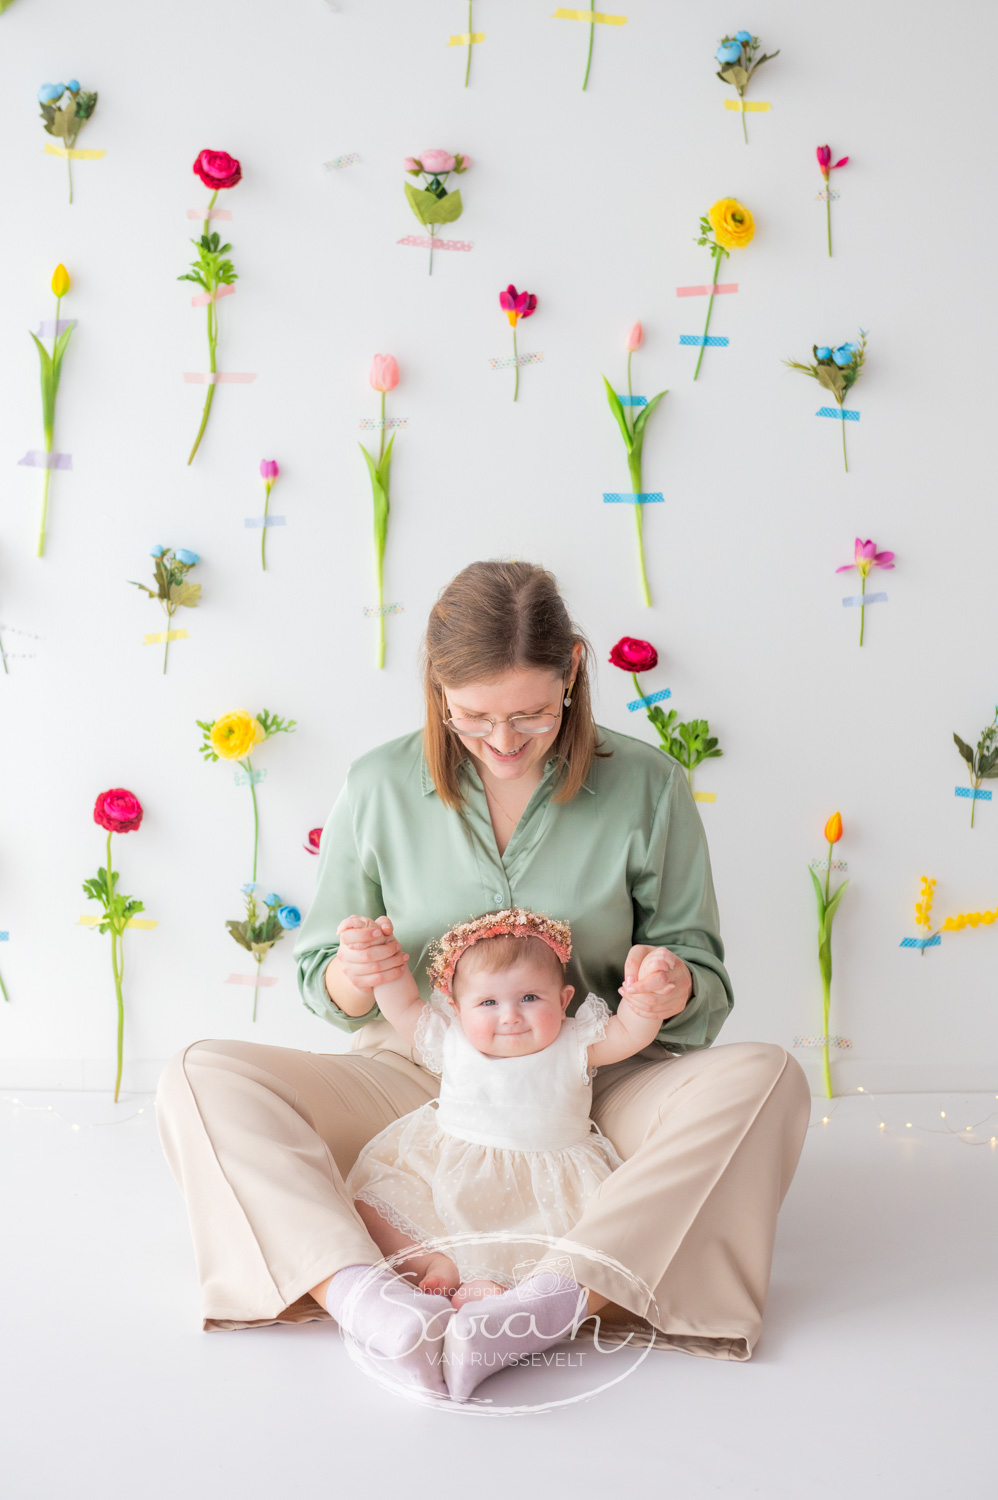 lenteshoot met baby en mama in lente decor bij fotograaf Sarah Van Ruyssevelt Photography